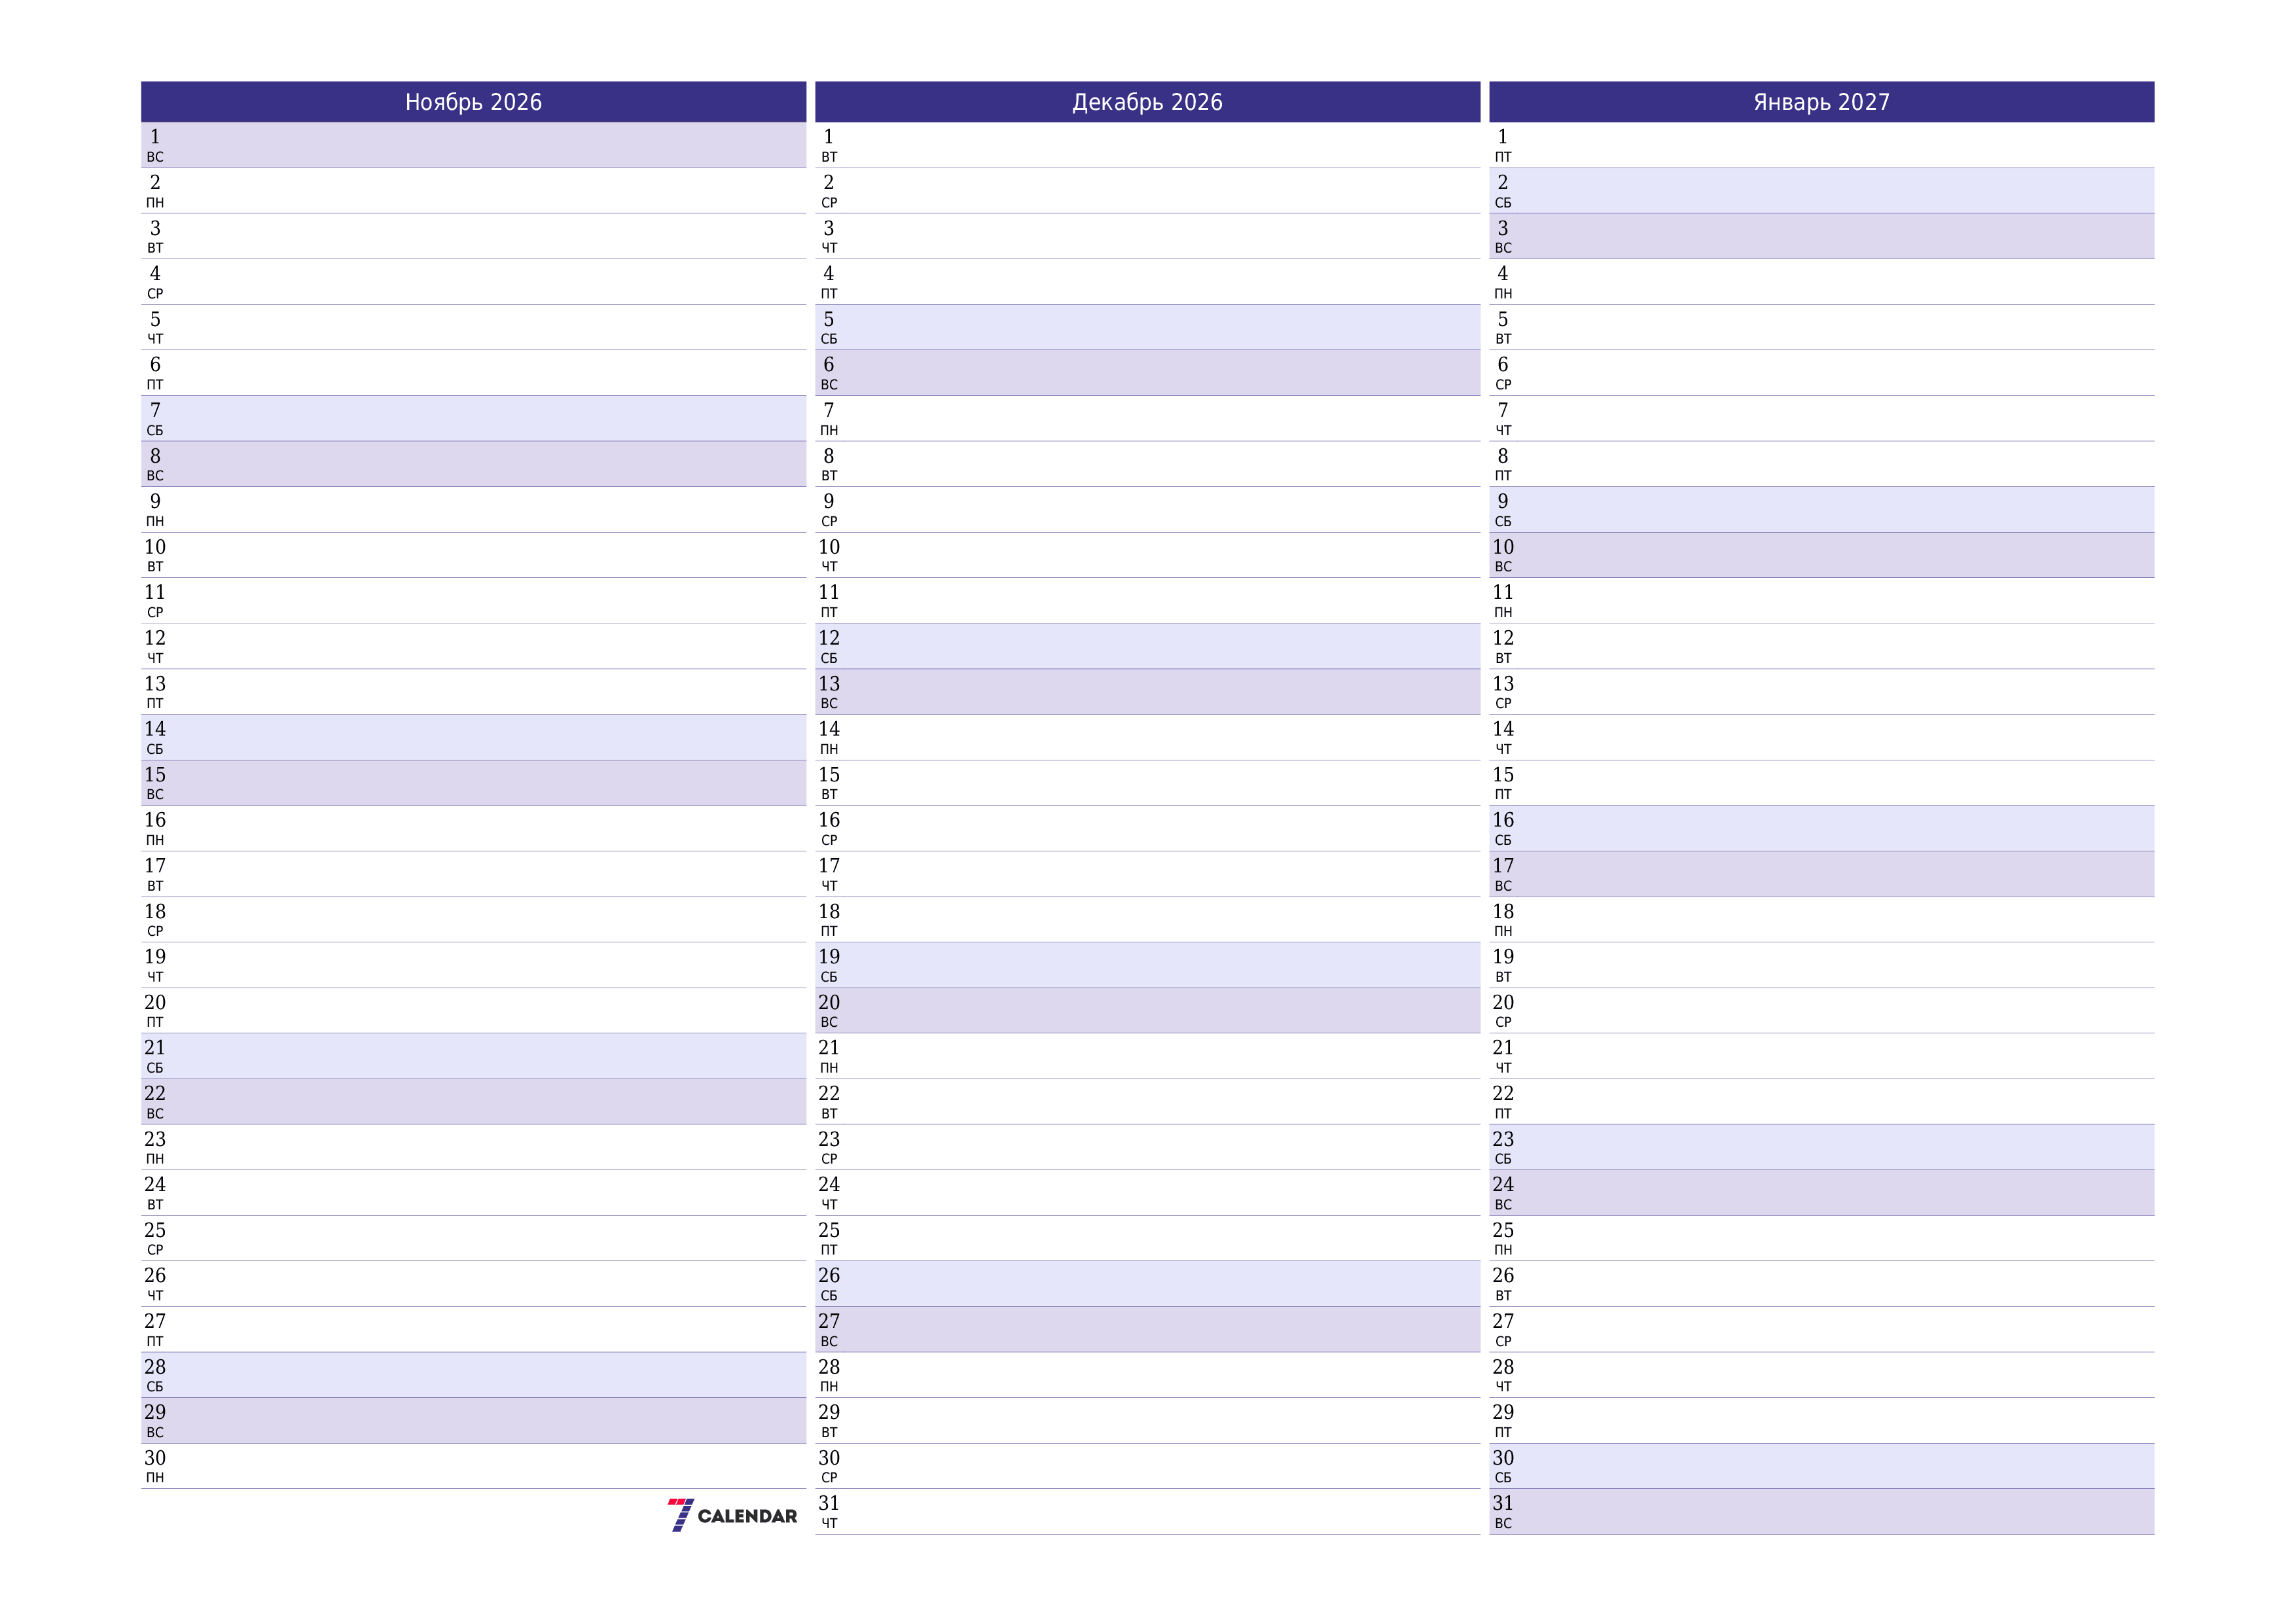 Пустой ежемесячный календарь-планер на месяц Ноябрь 2026